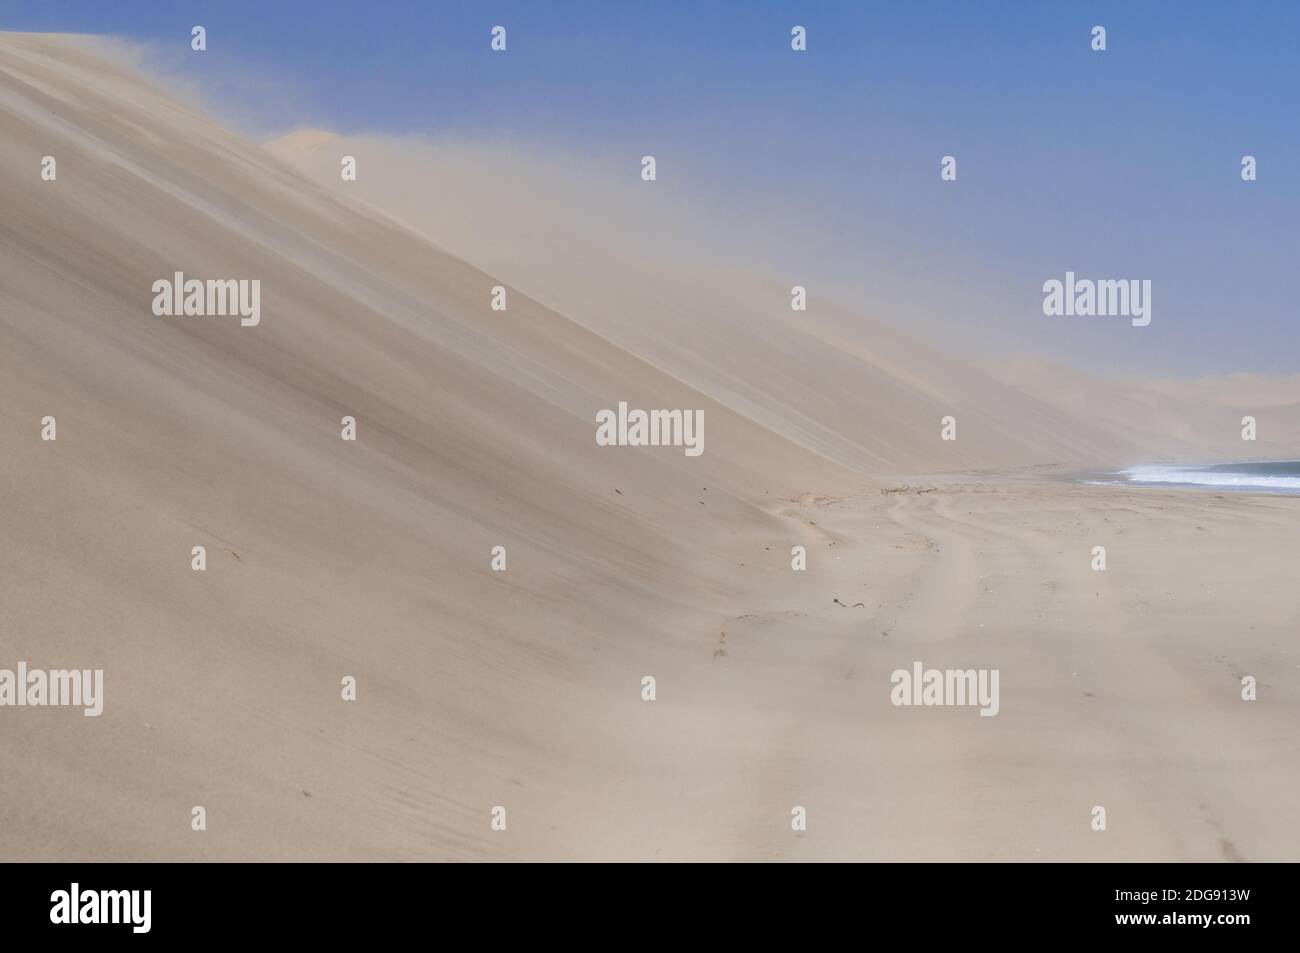 Sandsturm an der Skelettküste, Dünen auf den Atlantischen Ozean, Wüste Namib, Namibia, Afrika. Stockfoto